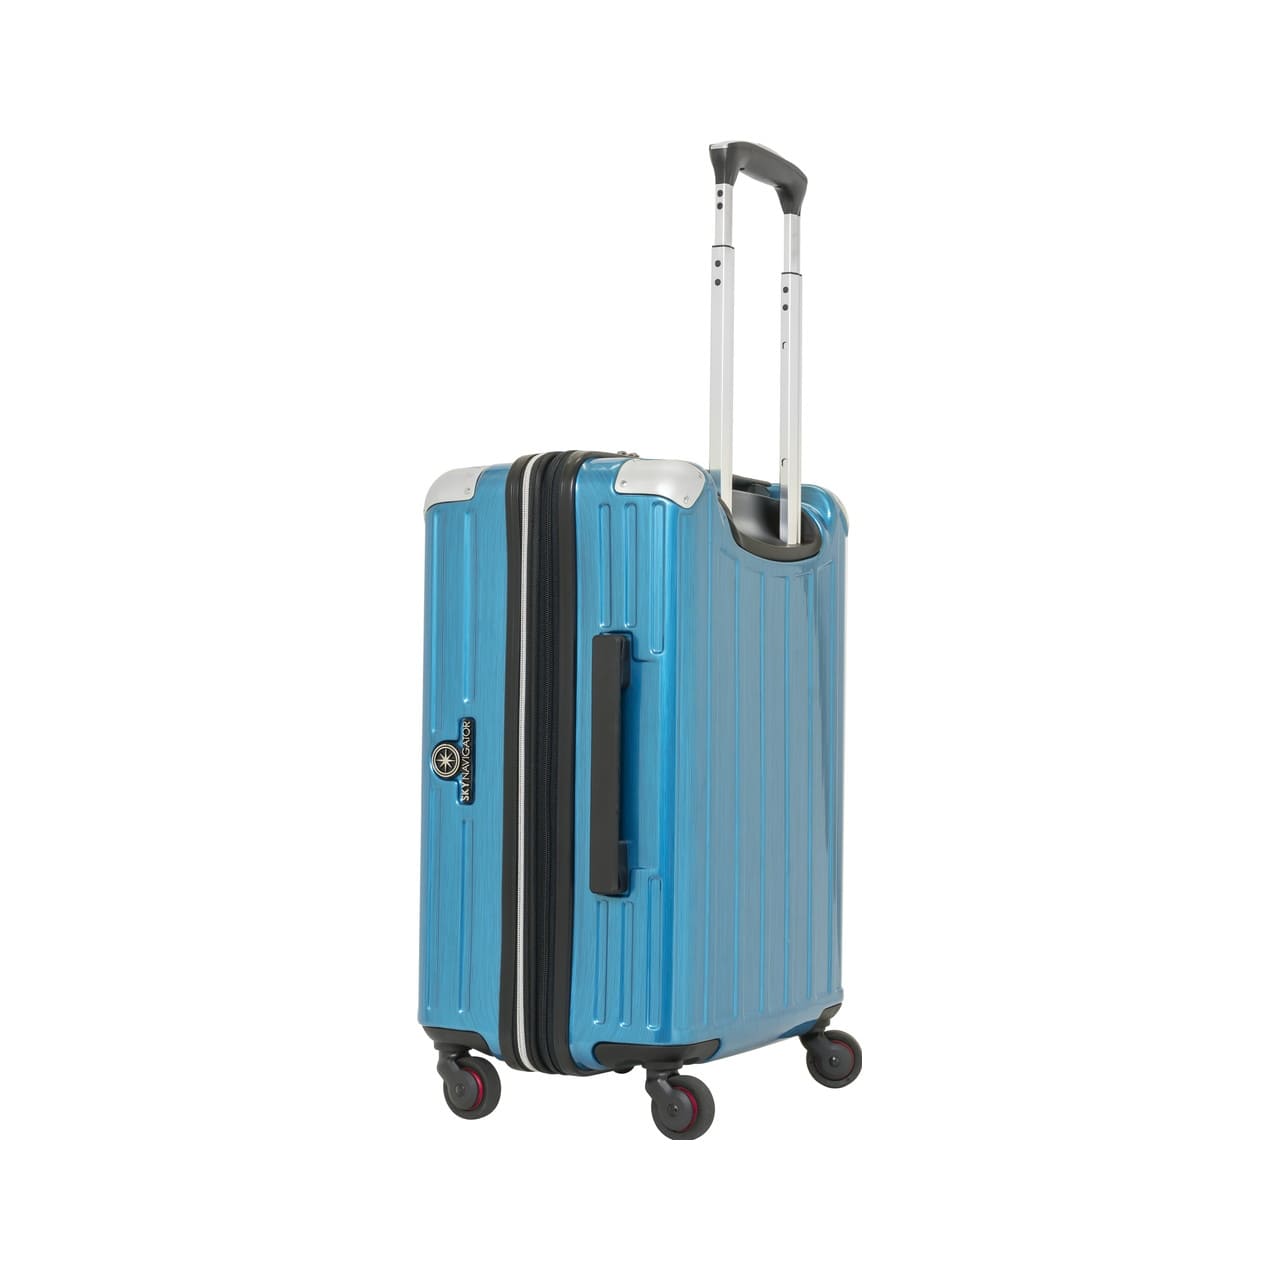 SKYNAVIGATORのスーツケースSK-0739-50のブルーヘアラインの斜めサイド